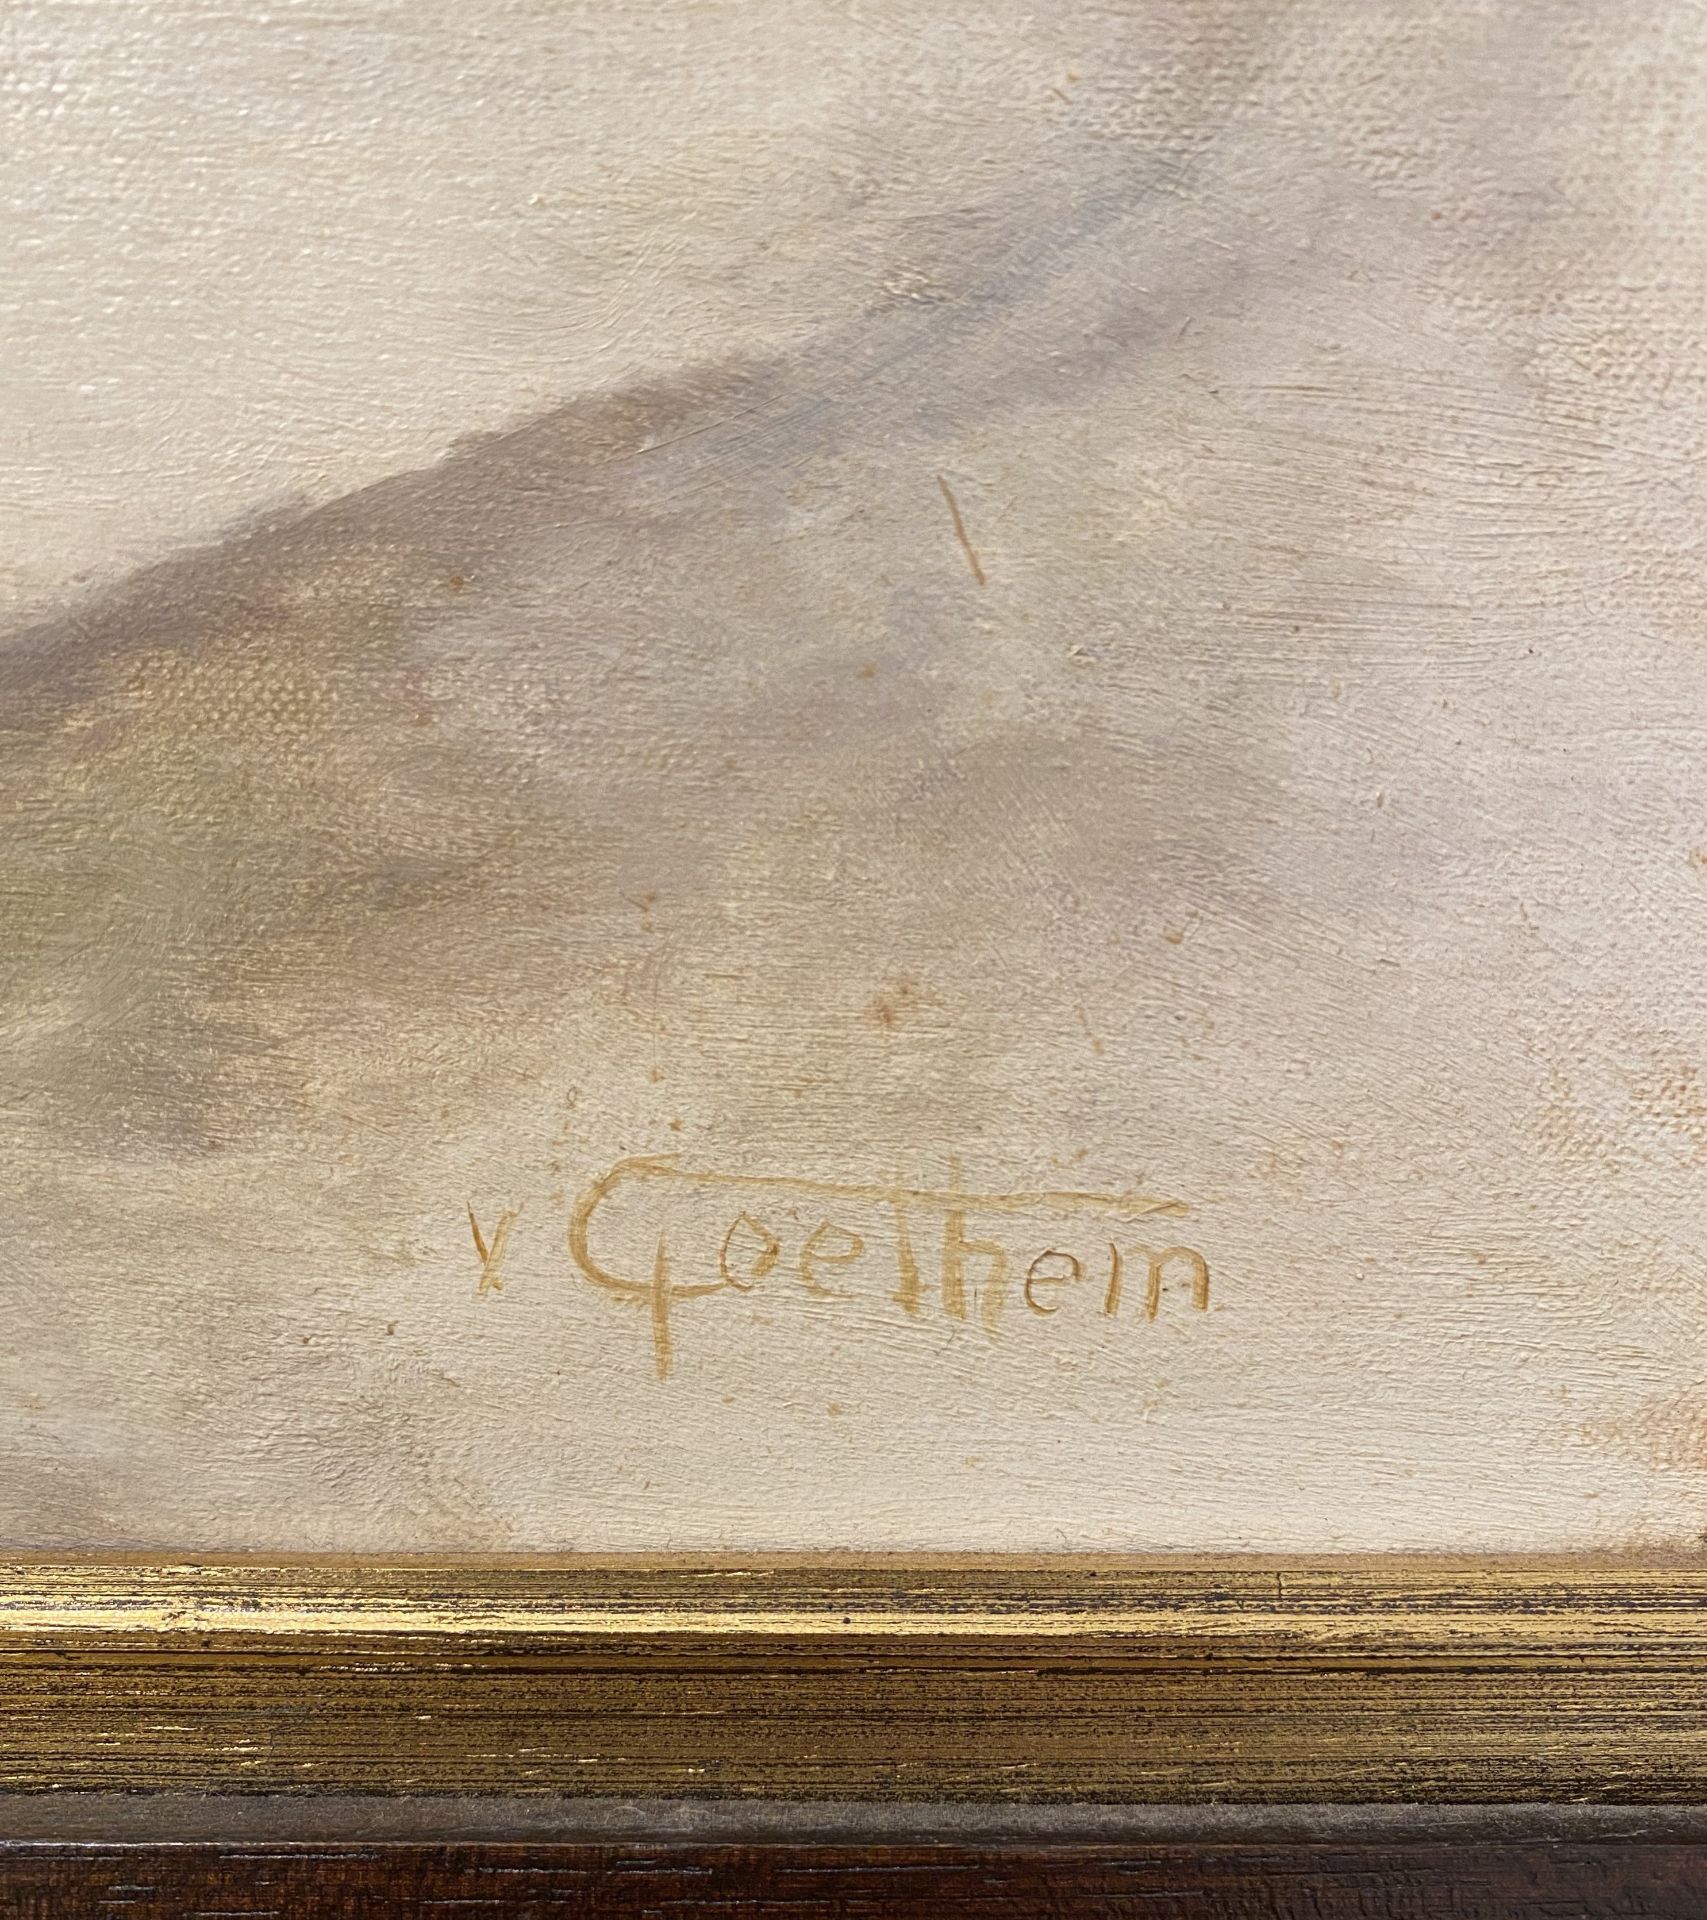 Oil on Canvas signed V.Goethem - Image 2 of 4